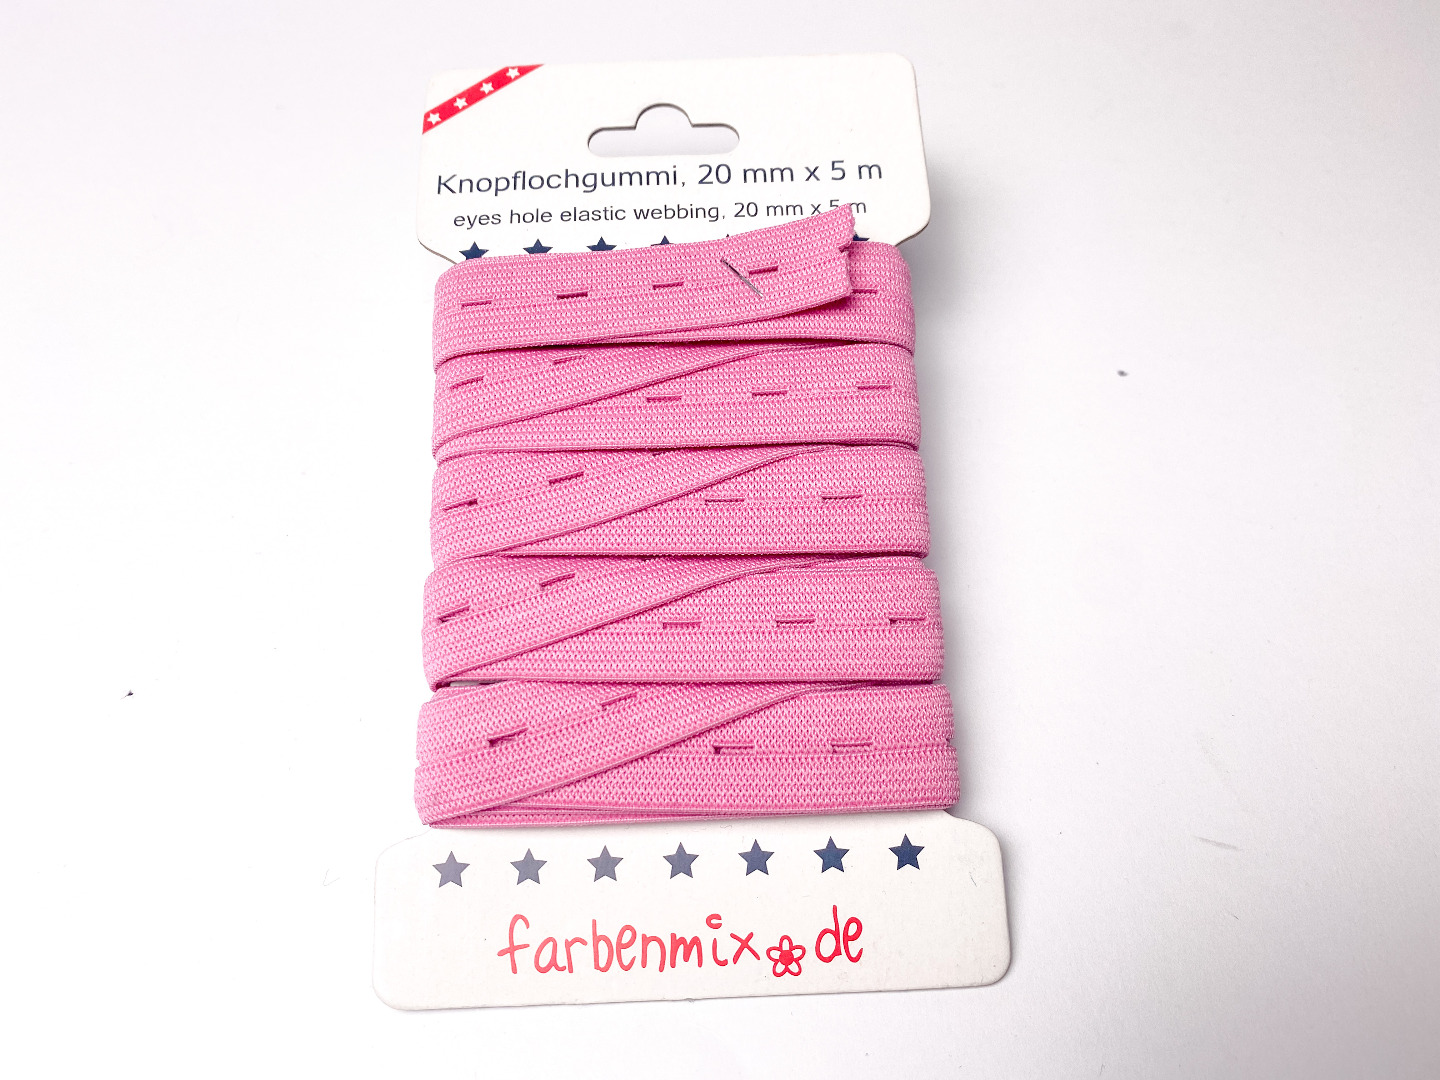 Knopflochgummiband - pink - 5m